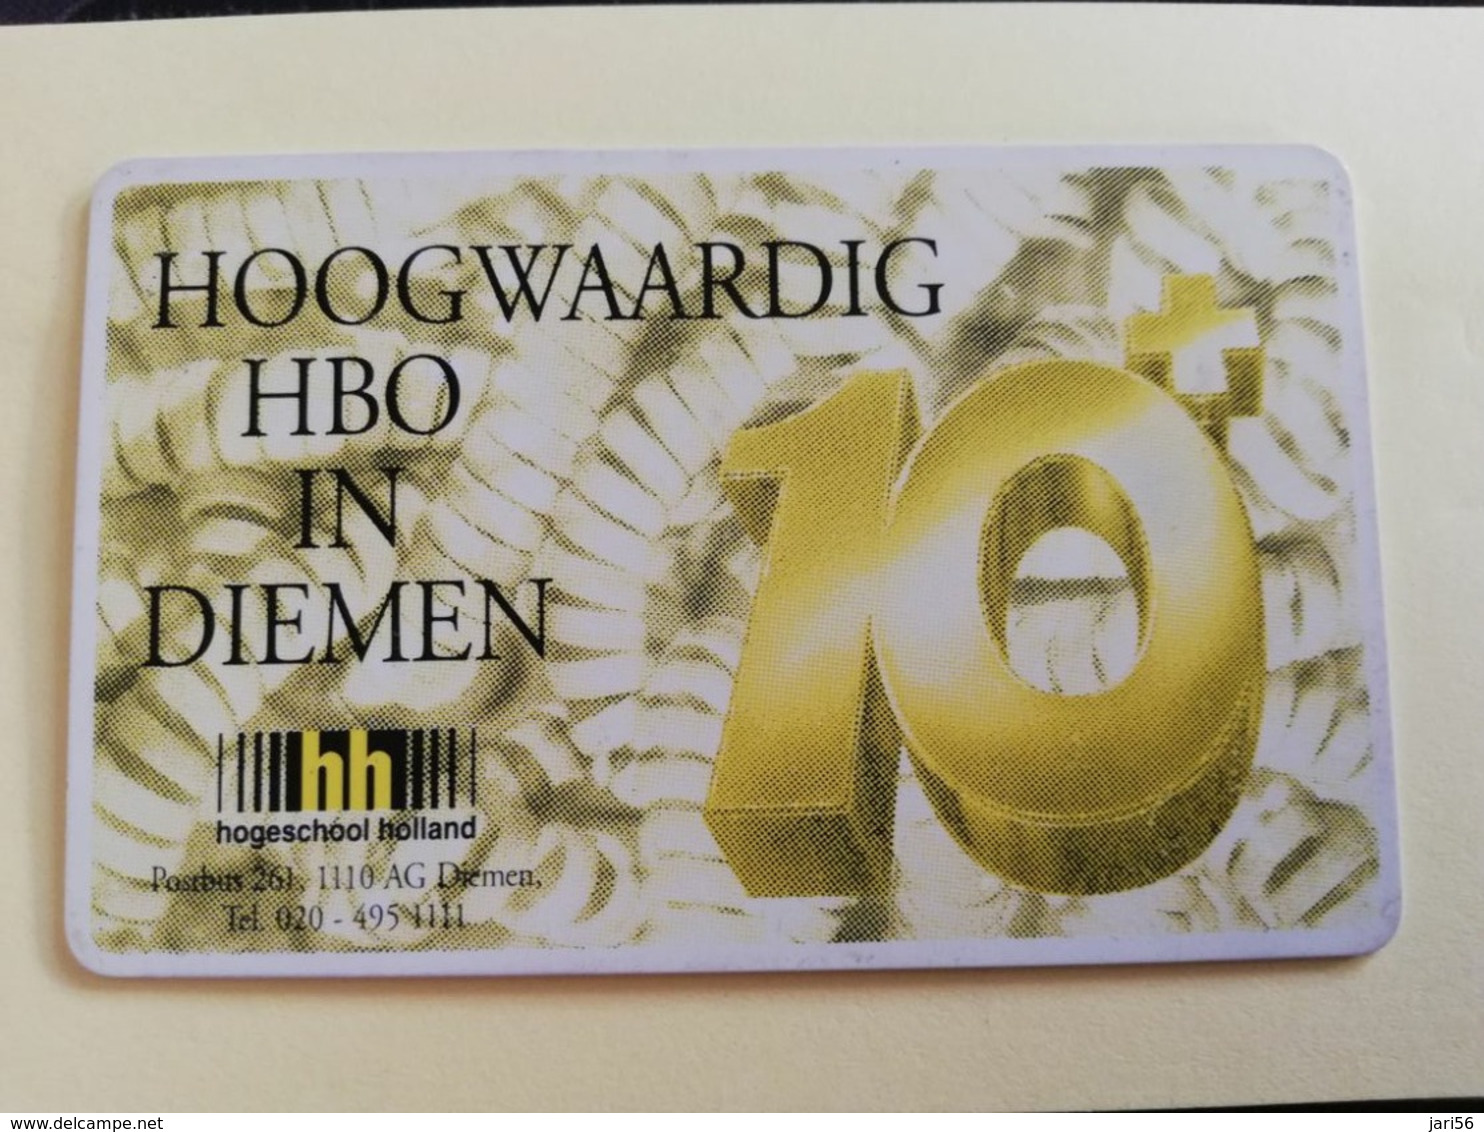 NETHERLANDS  ADVERTISING CHIPCARD HFL 5,00 CRE 131.02   HOOGWAARDIG HBO DIEMEN          Fine Used   ** 3188** - Privées